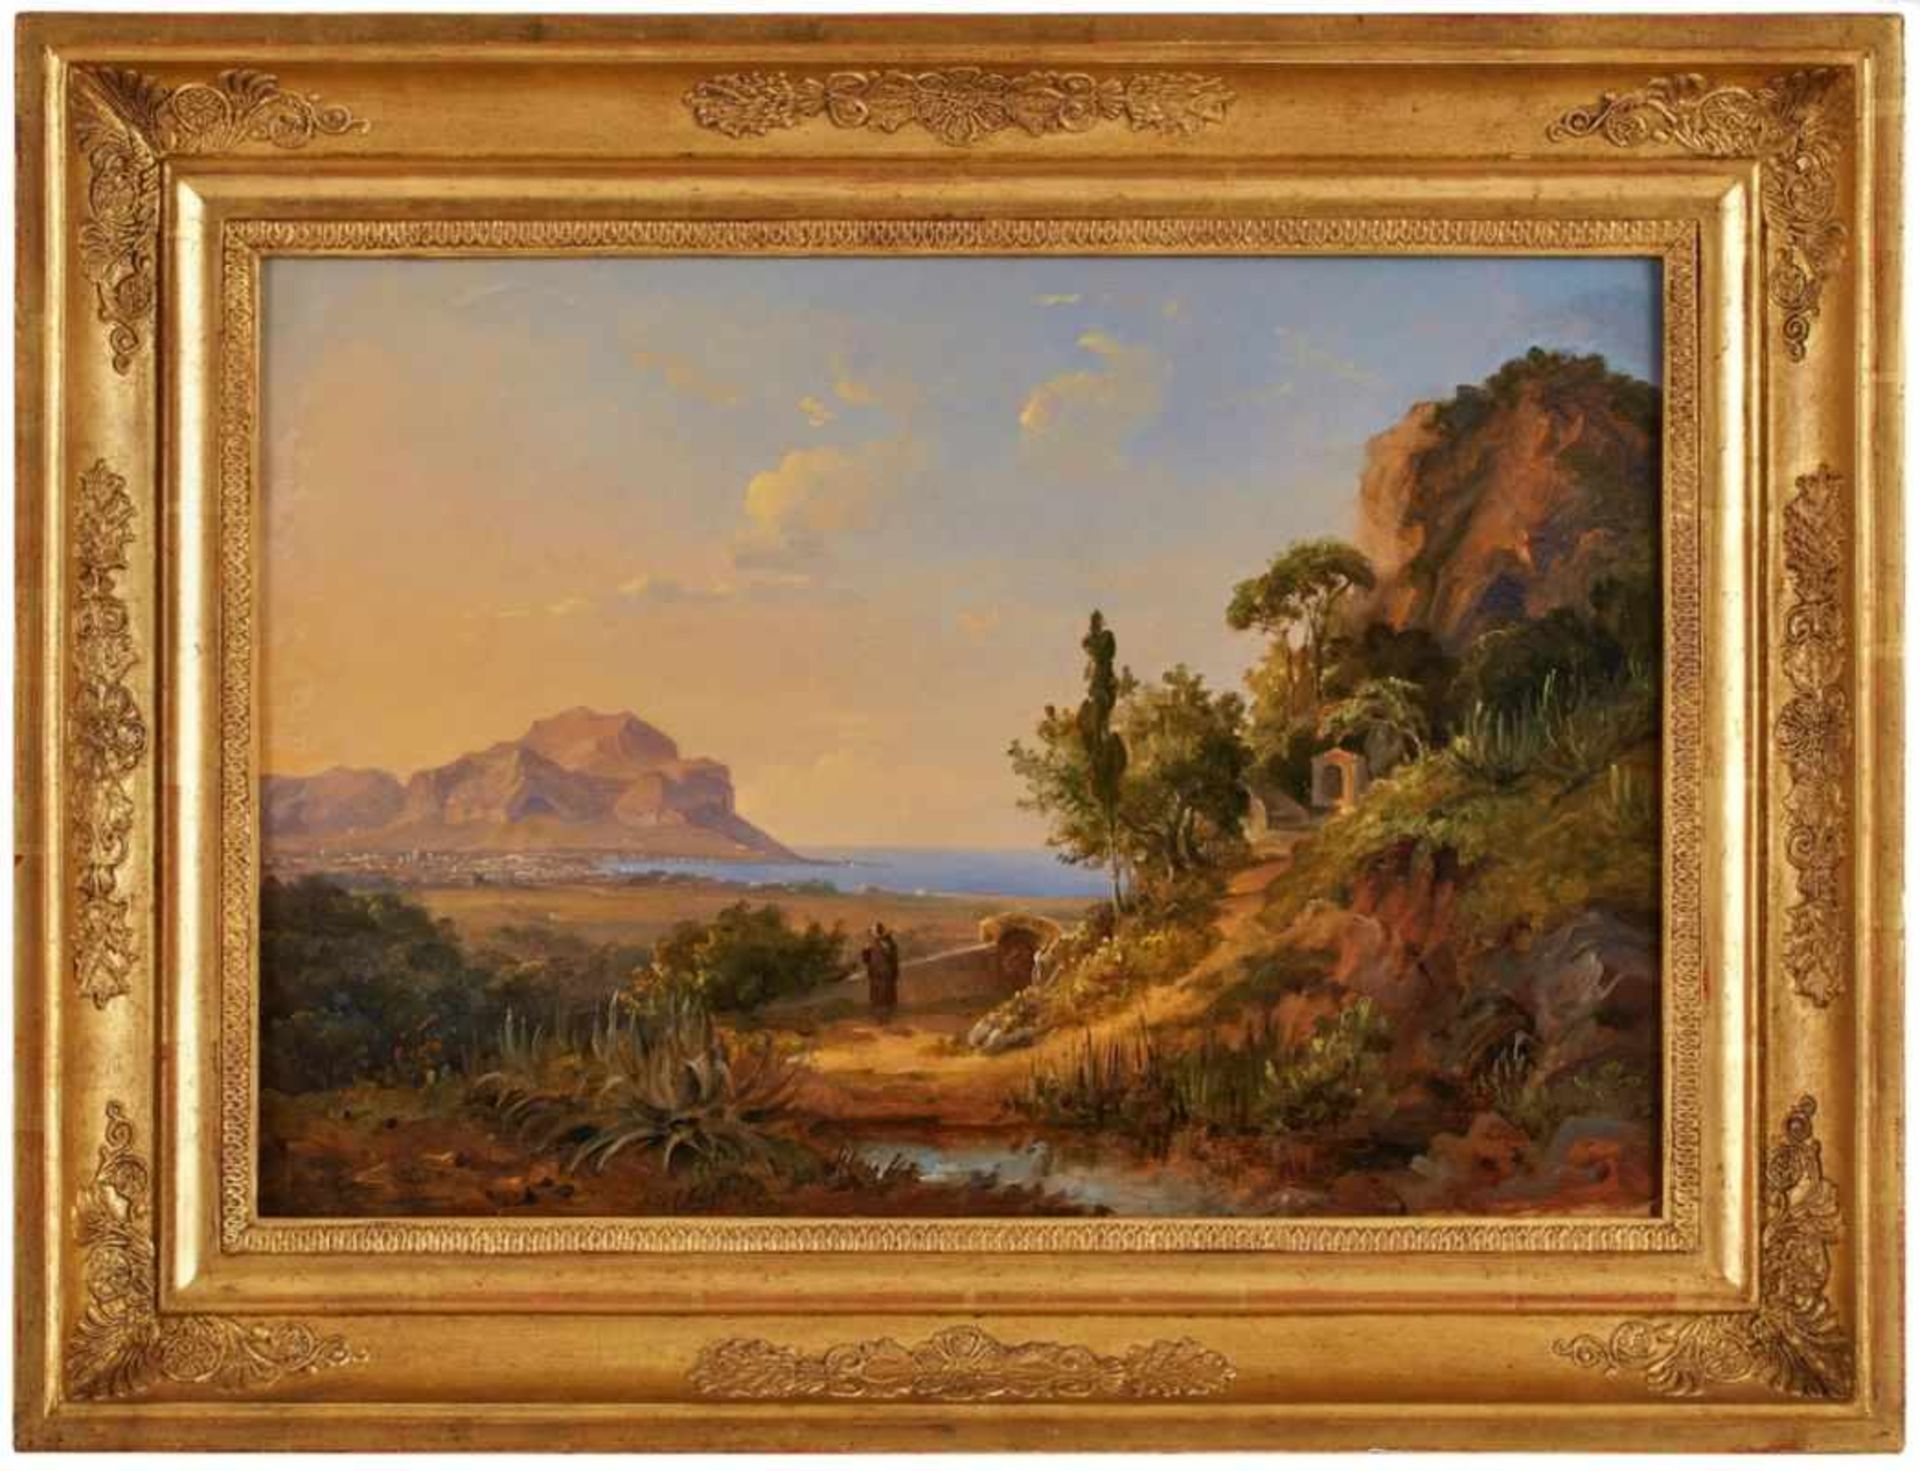 Gemälde Carl Morgenstern1811 Frankfurt - 1893 Frankfurt "Ansicht von Palermo mit dem Monte